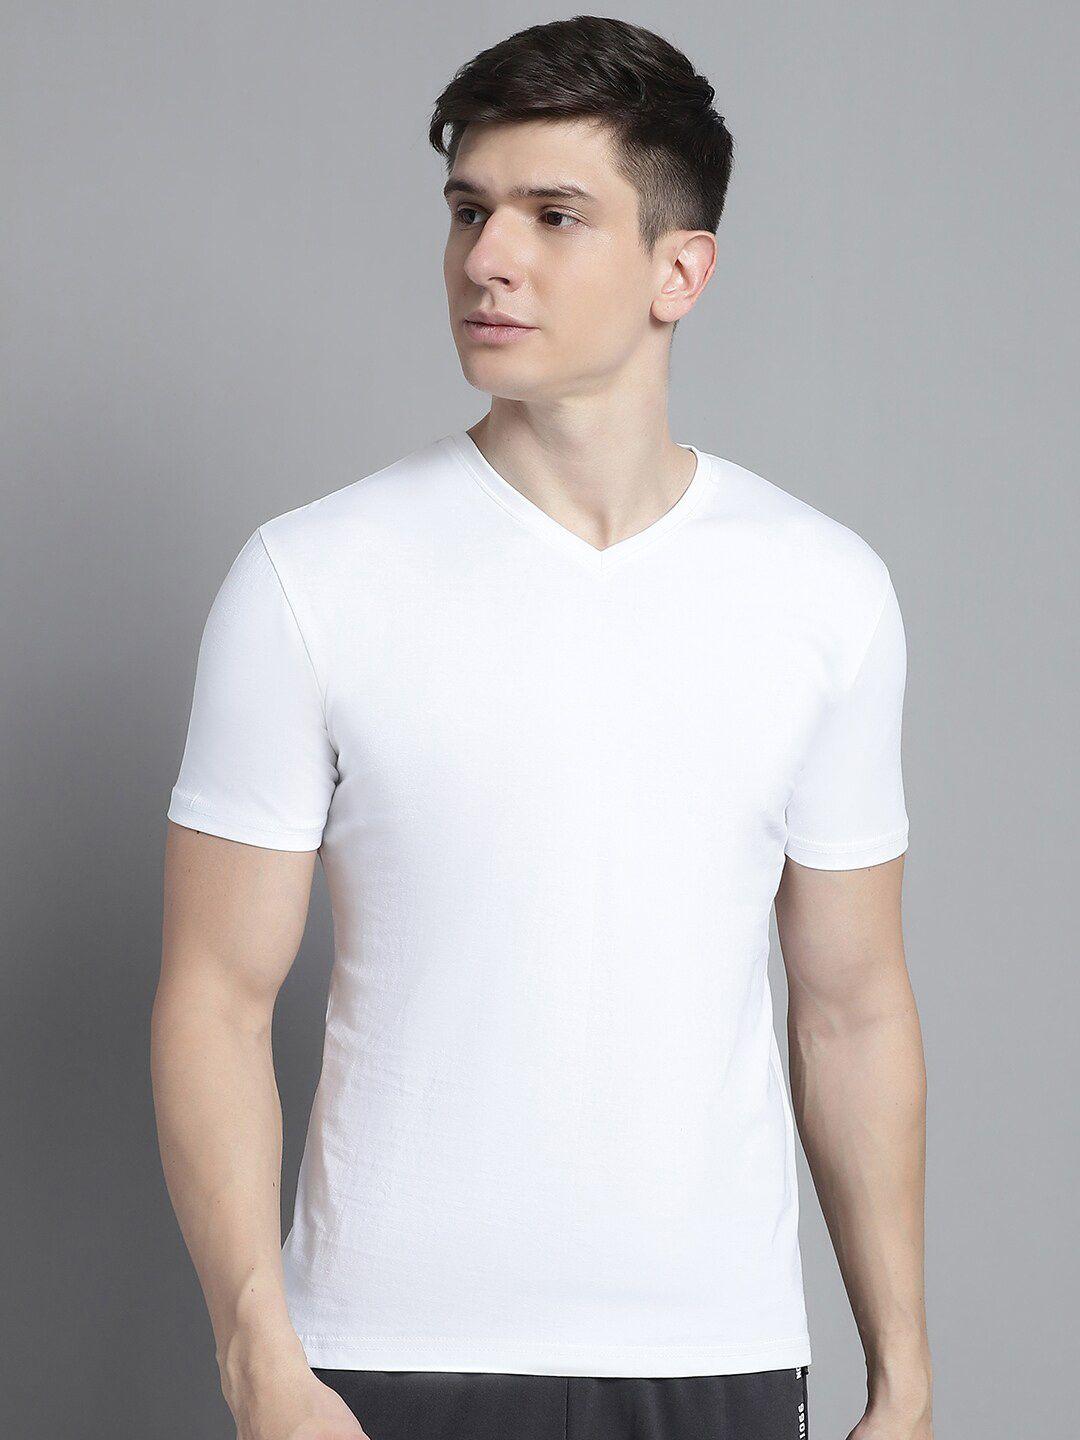 fbar v-neck slim fit pure cotton tshirt